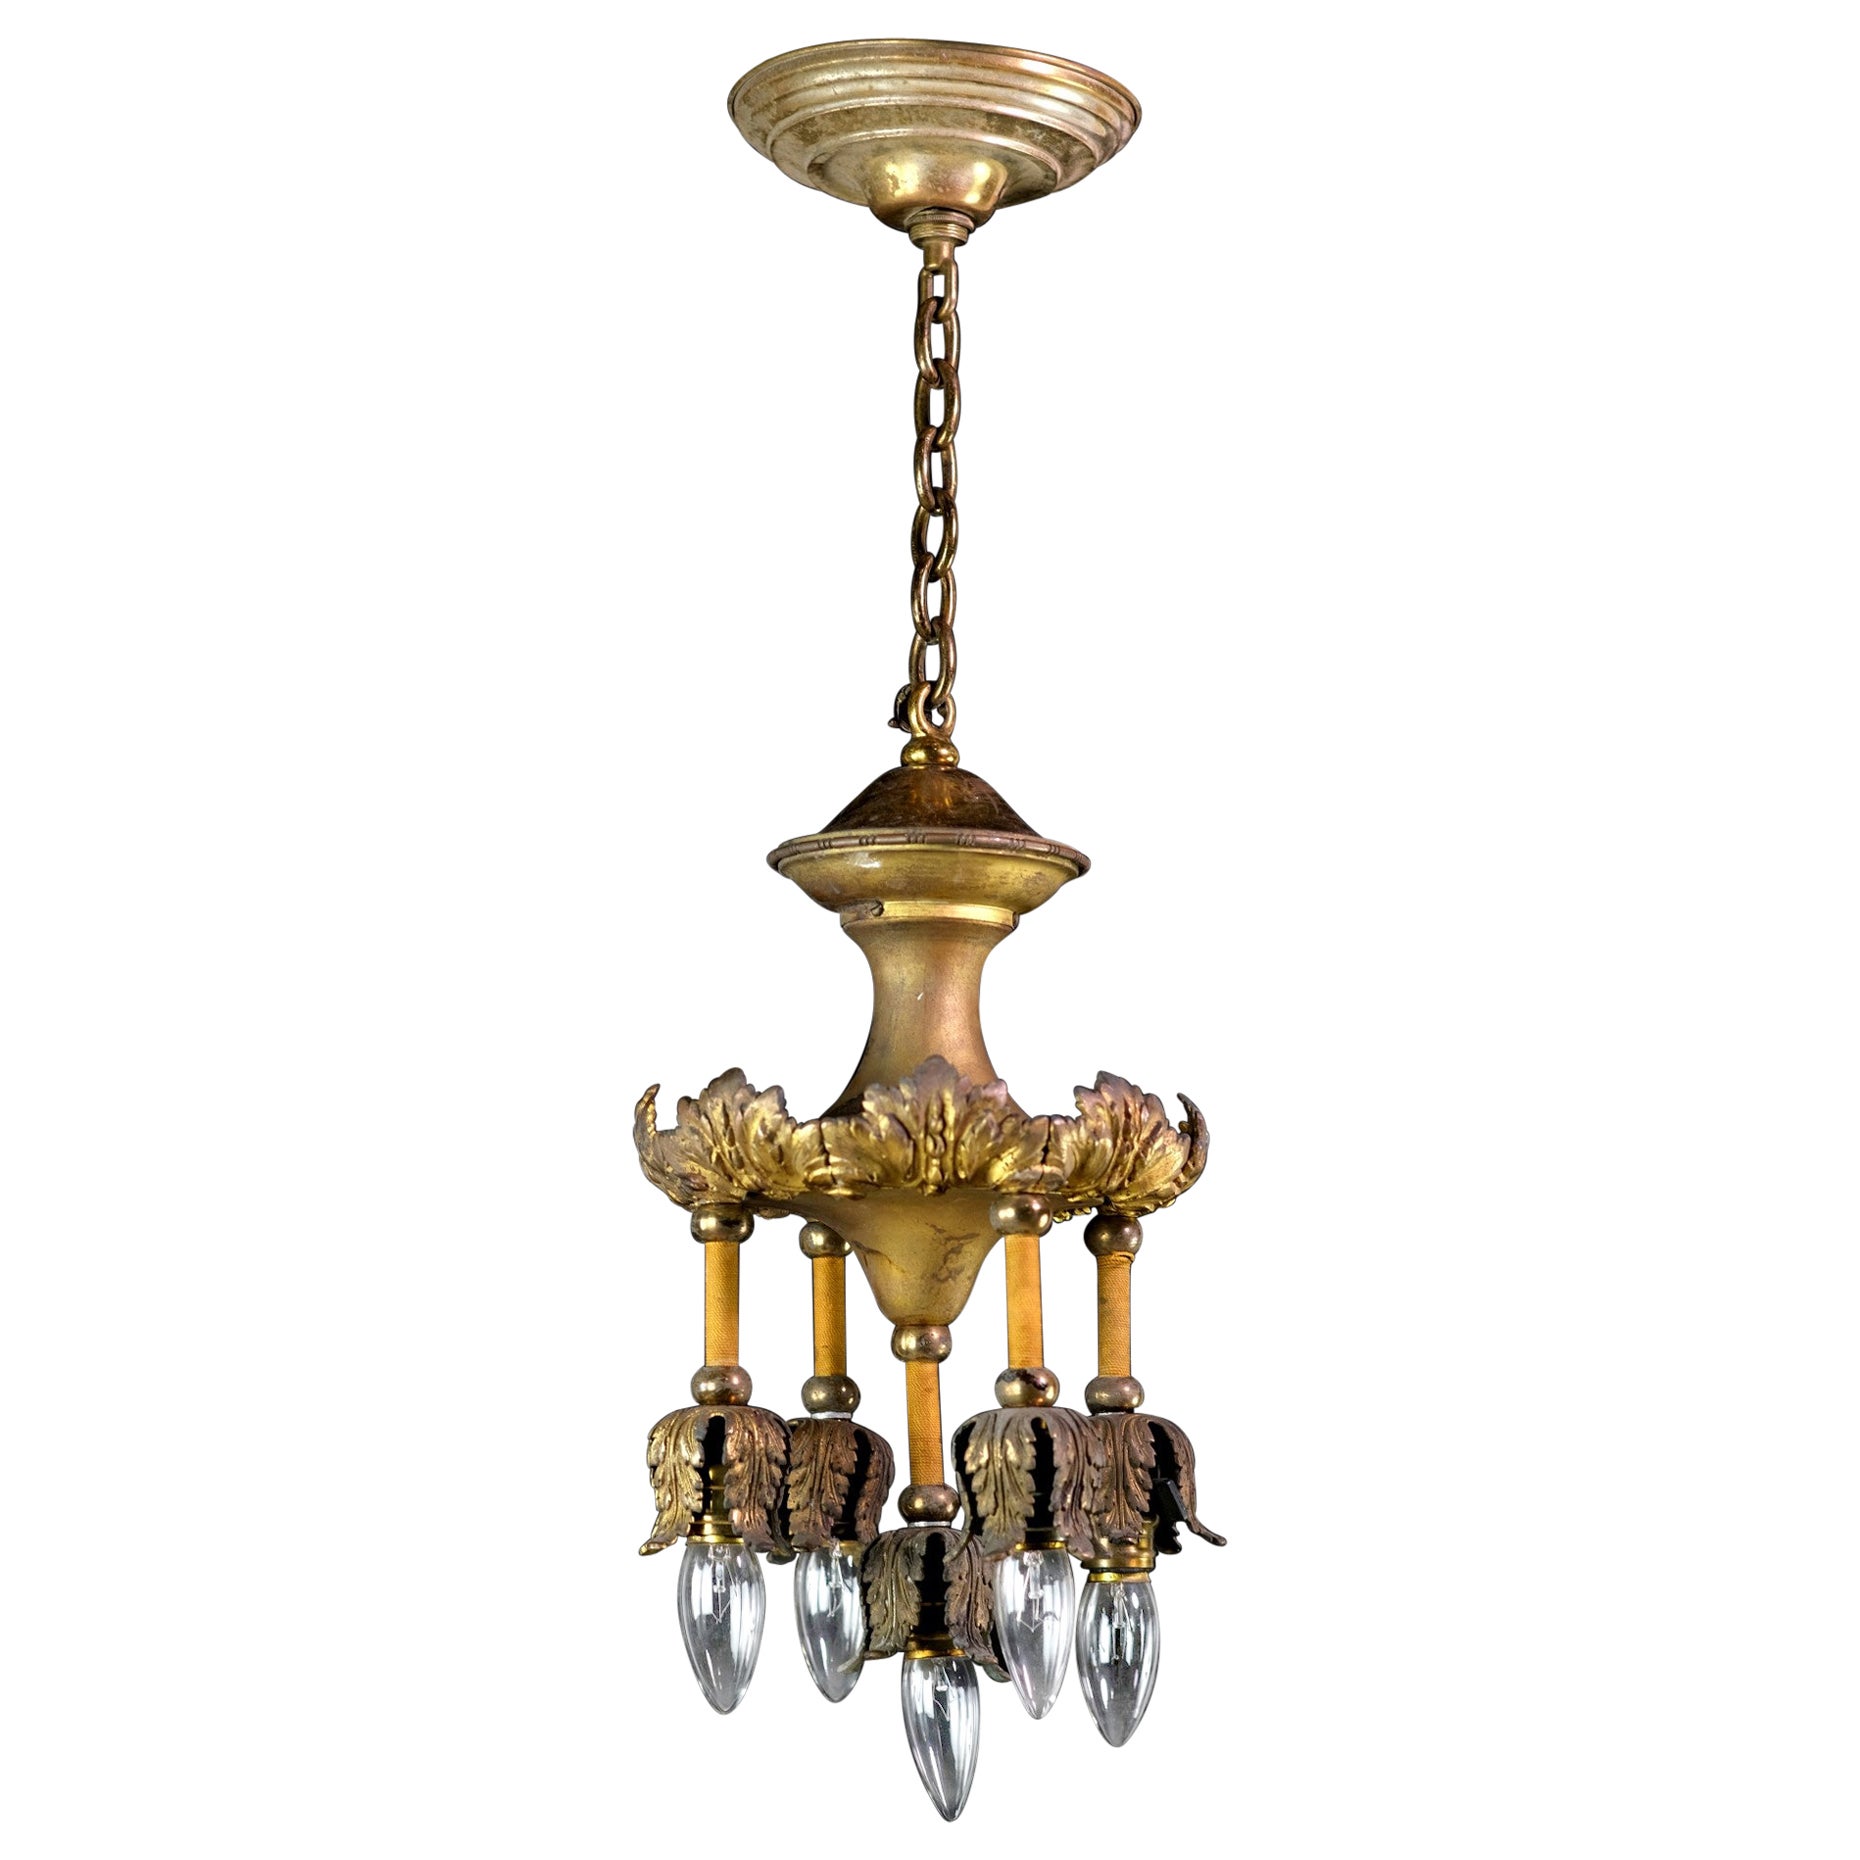 Gilded Bronze 5-Down Light Chandelier w/ Foliage Details Petite Antique